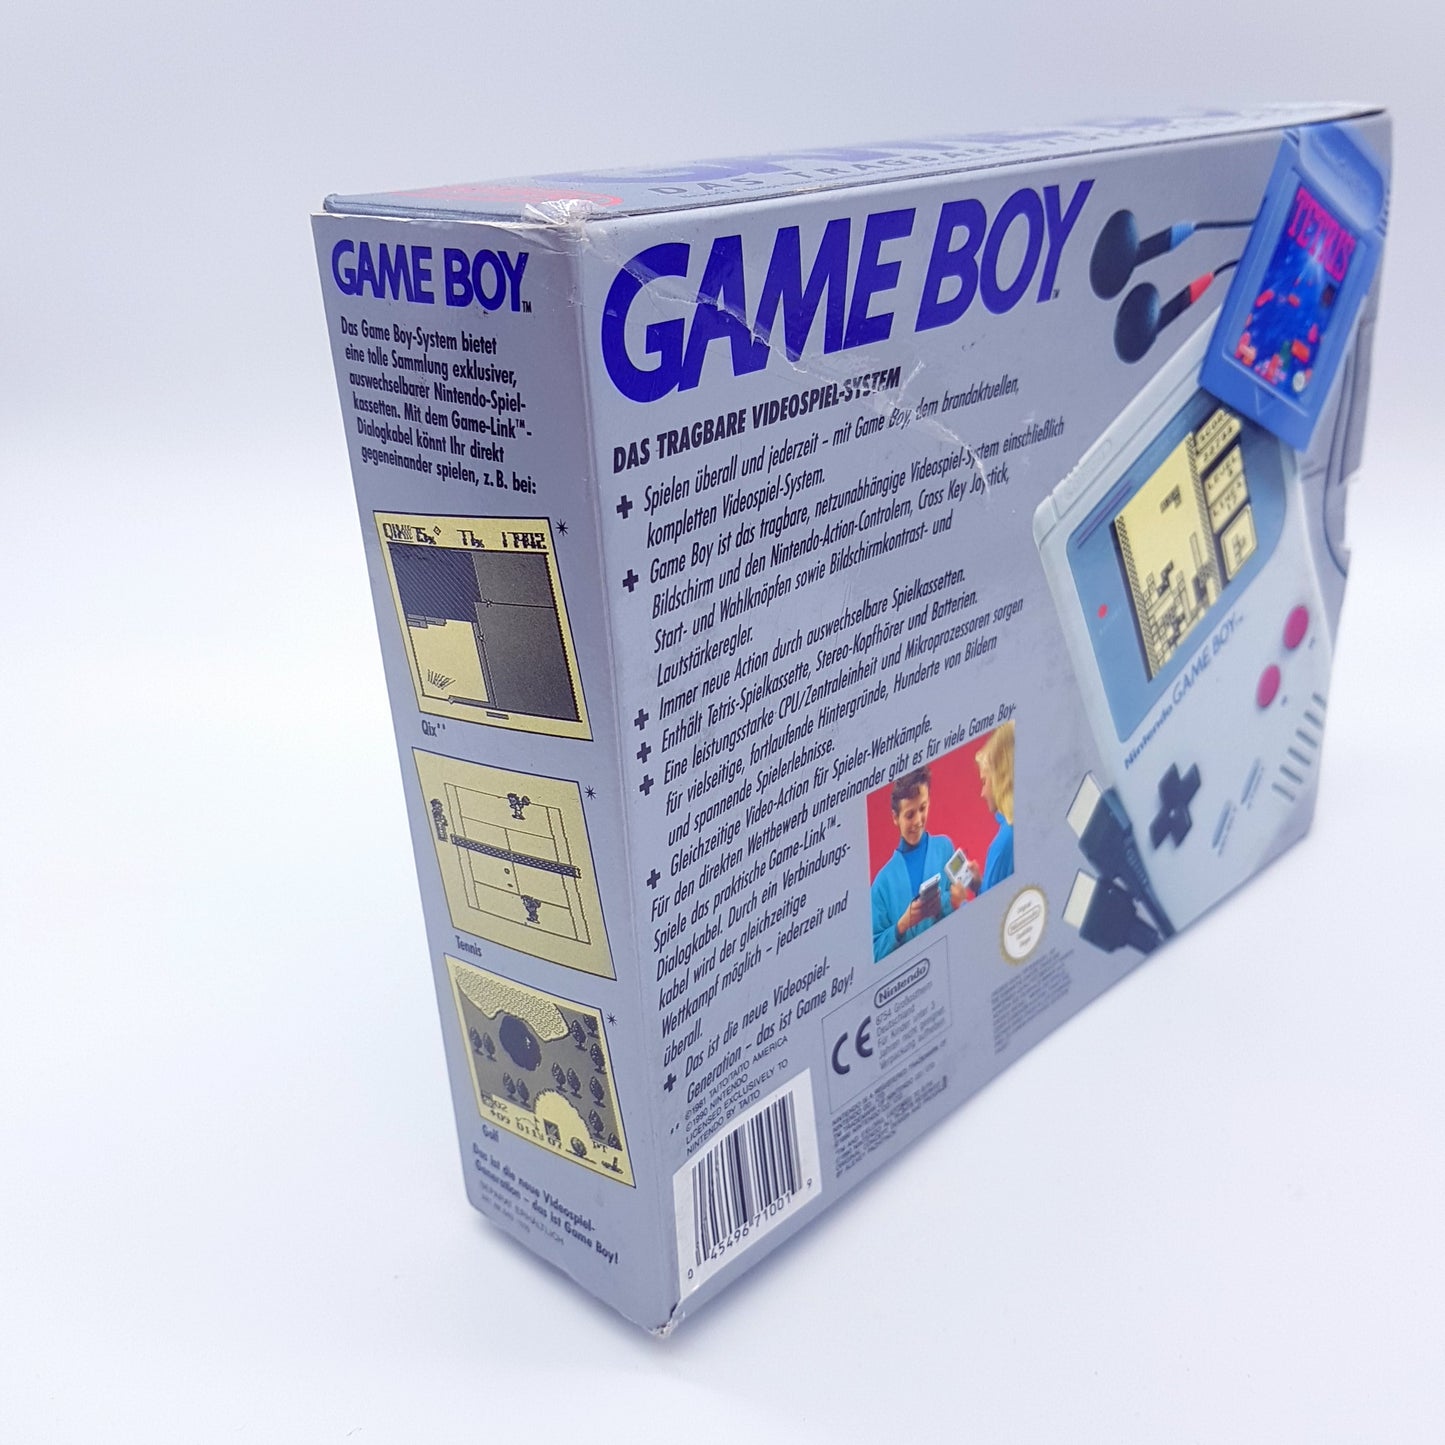 Nintendo Gameboy Konsole mit OVP, Anleitung & Spiel Tetris - gebraucht